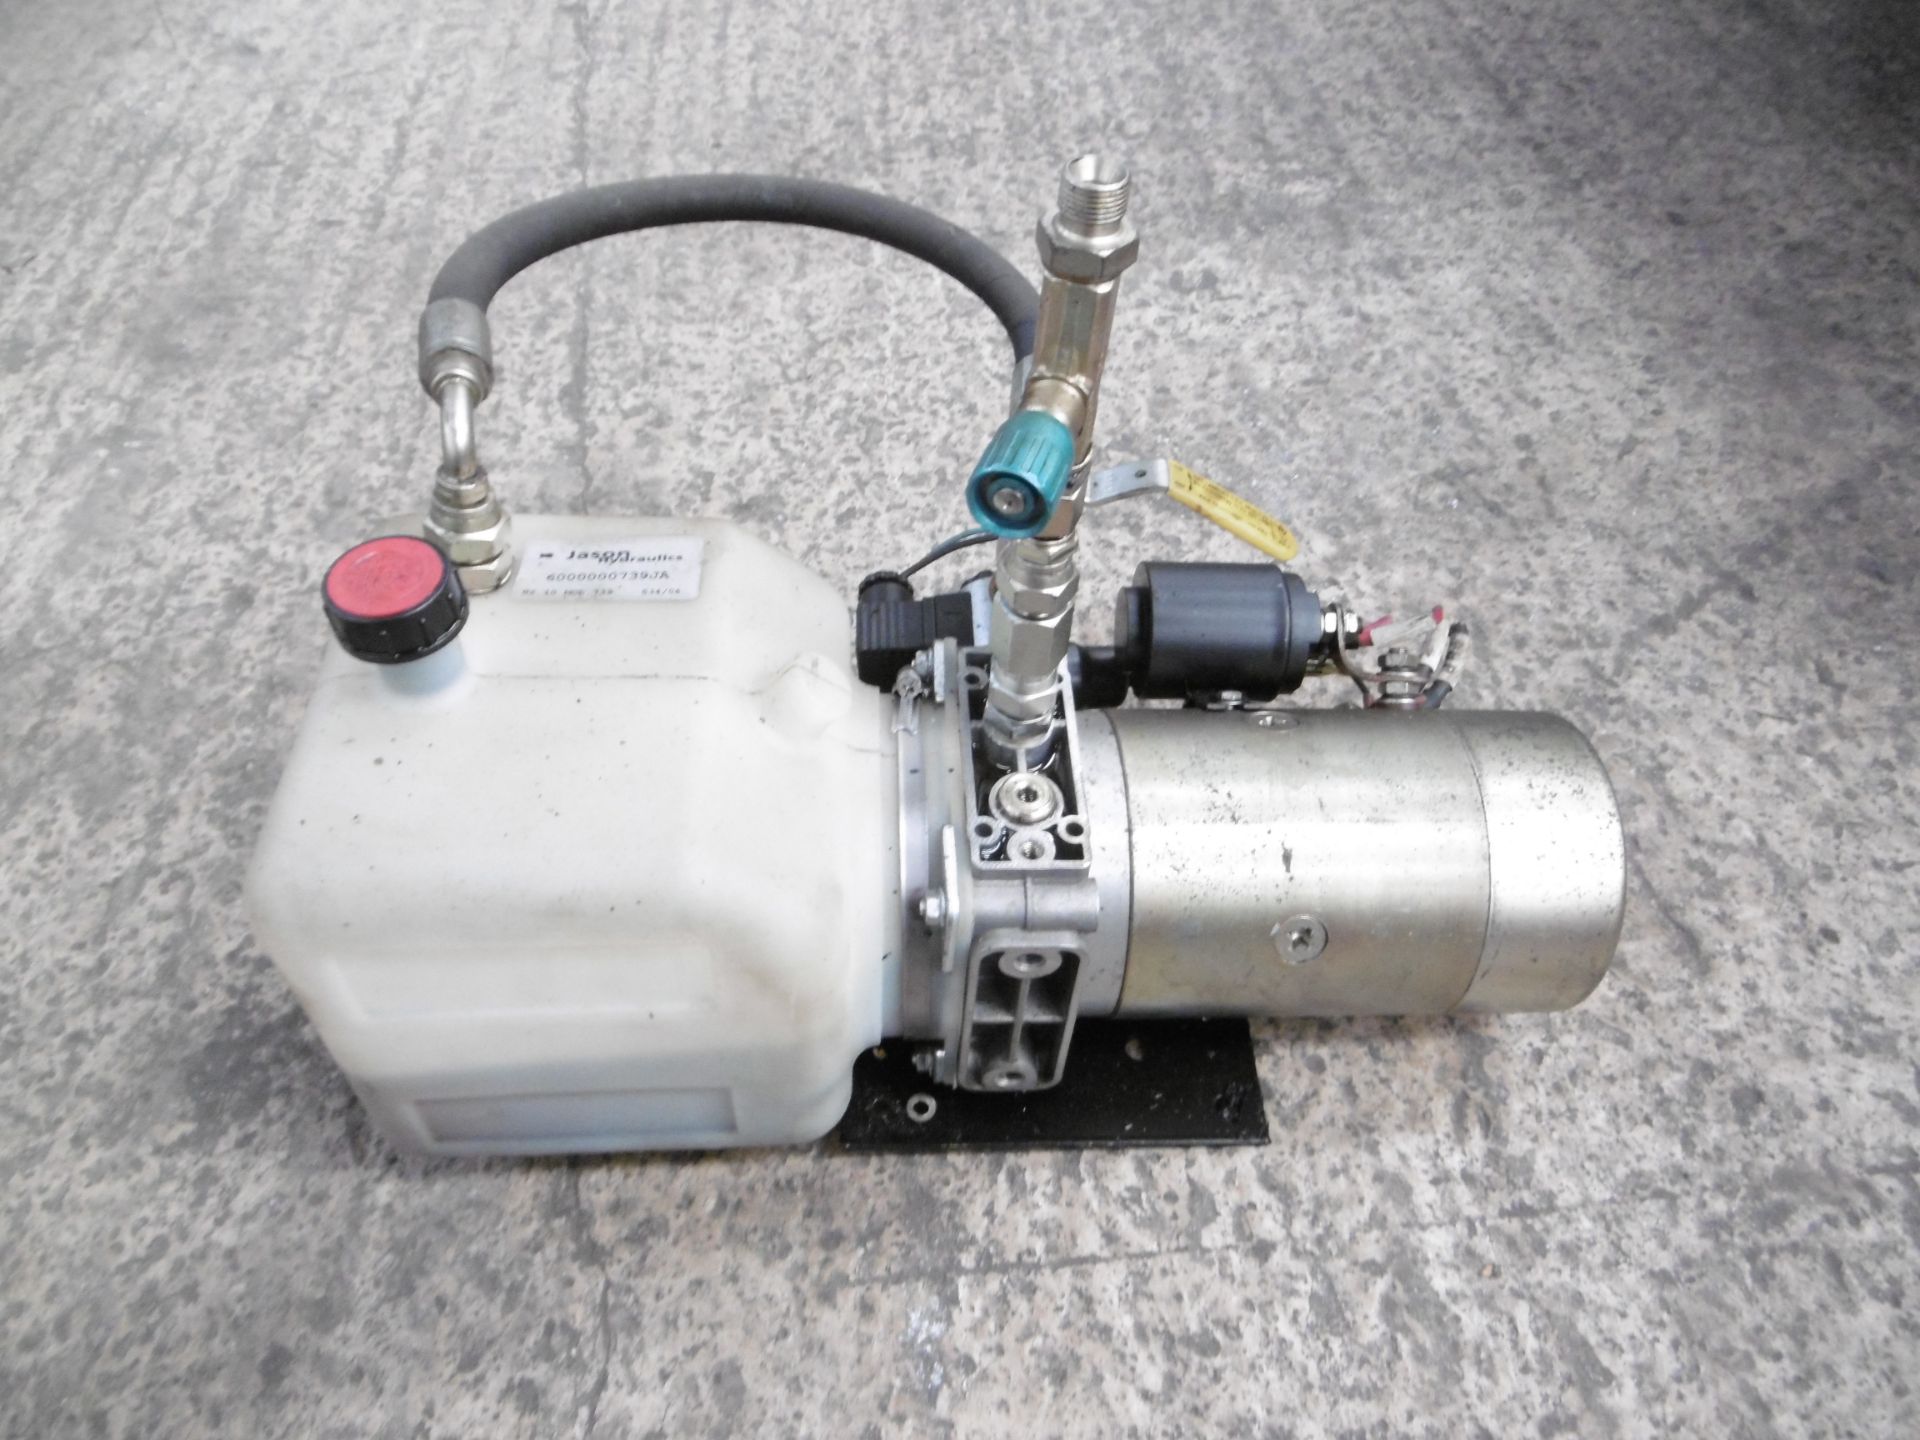 12V 1.8Kw Hydraulic Pump - Image 3 of 4